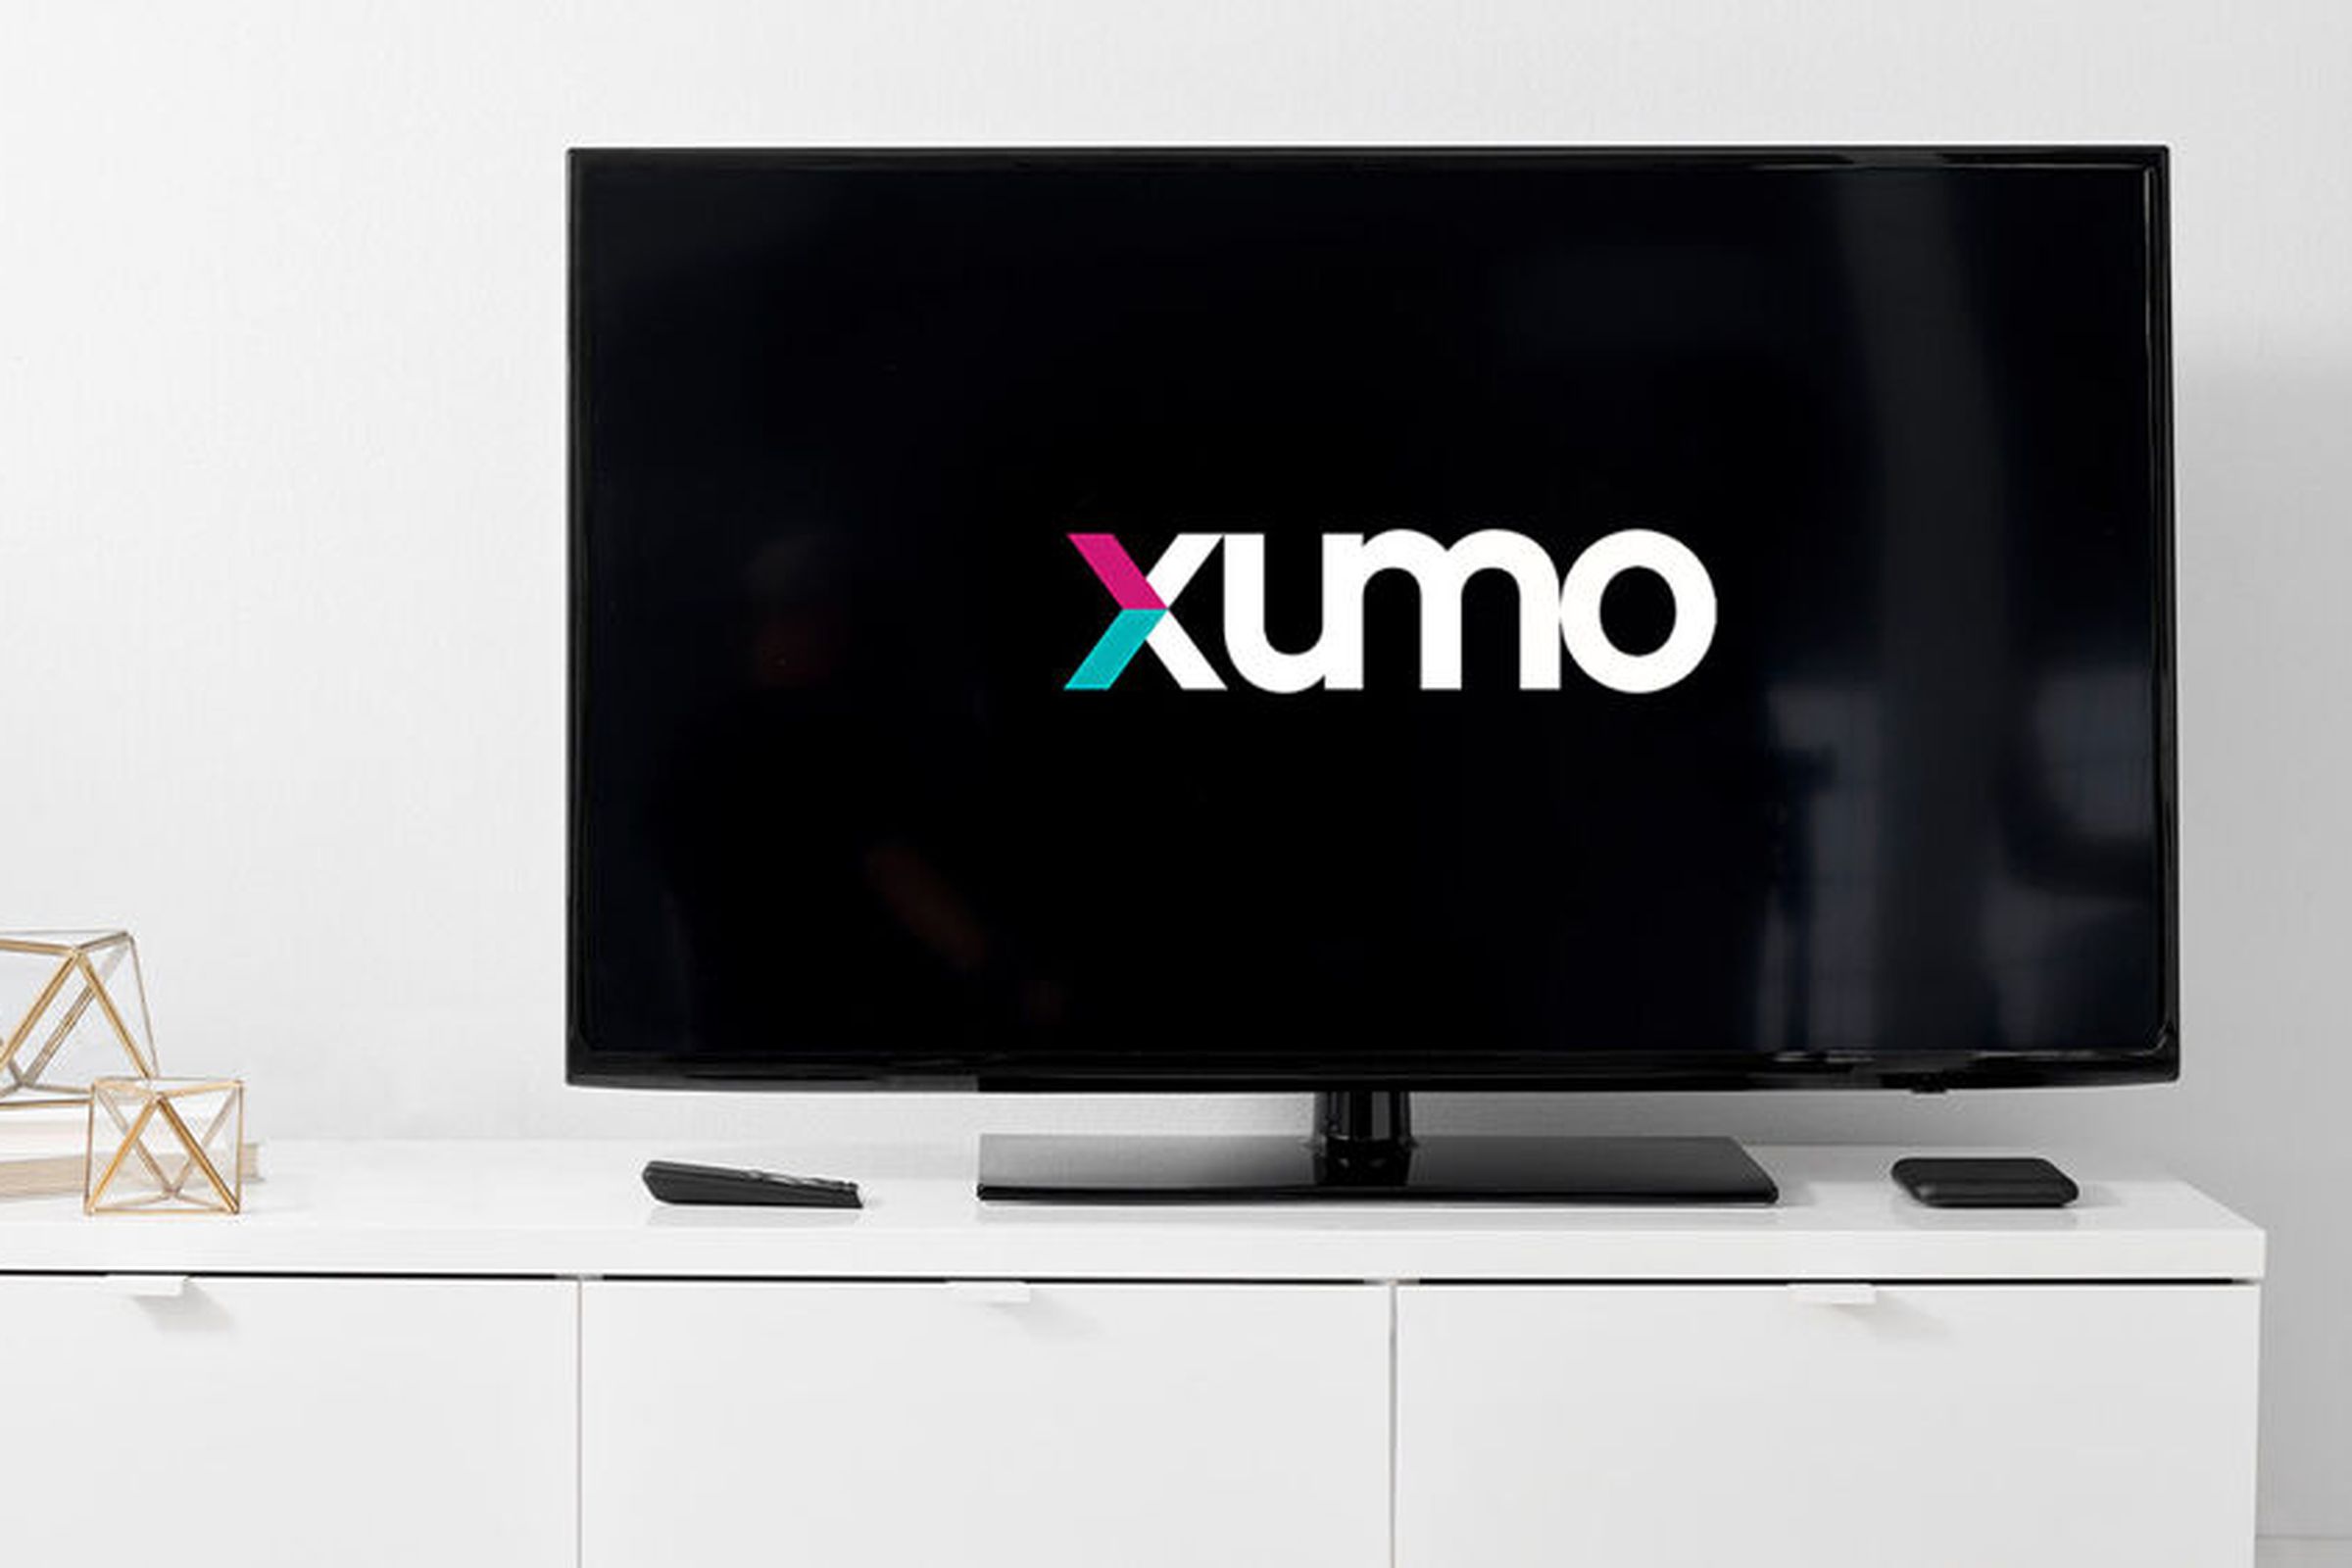 Xumo’s logo on a TV